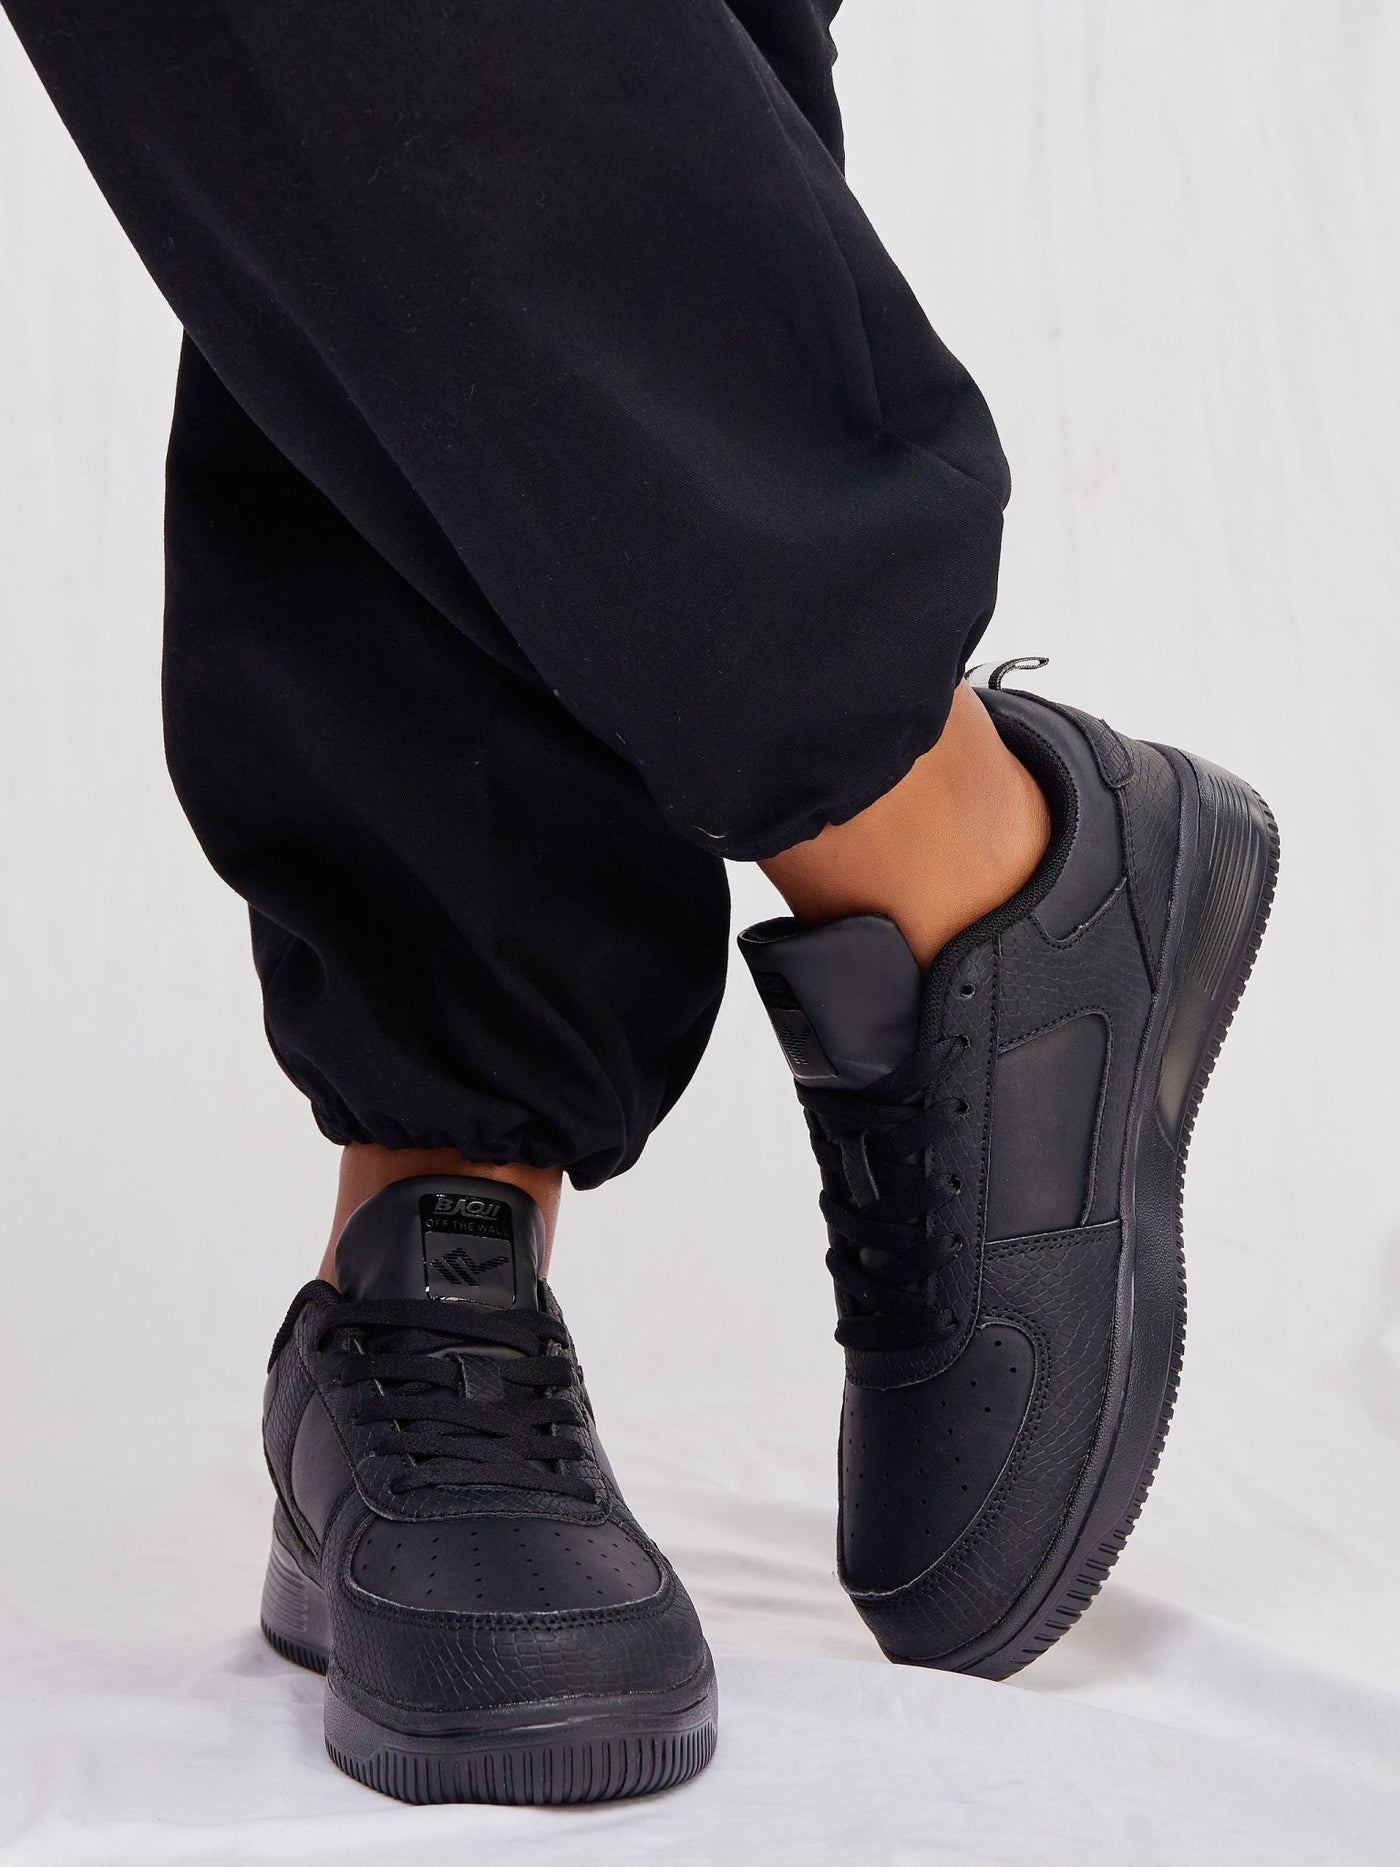 Ziatu Women's Double Leather Sneakers - Black - Shopzetu